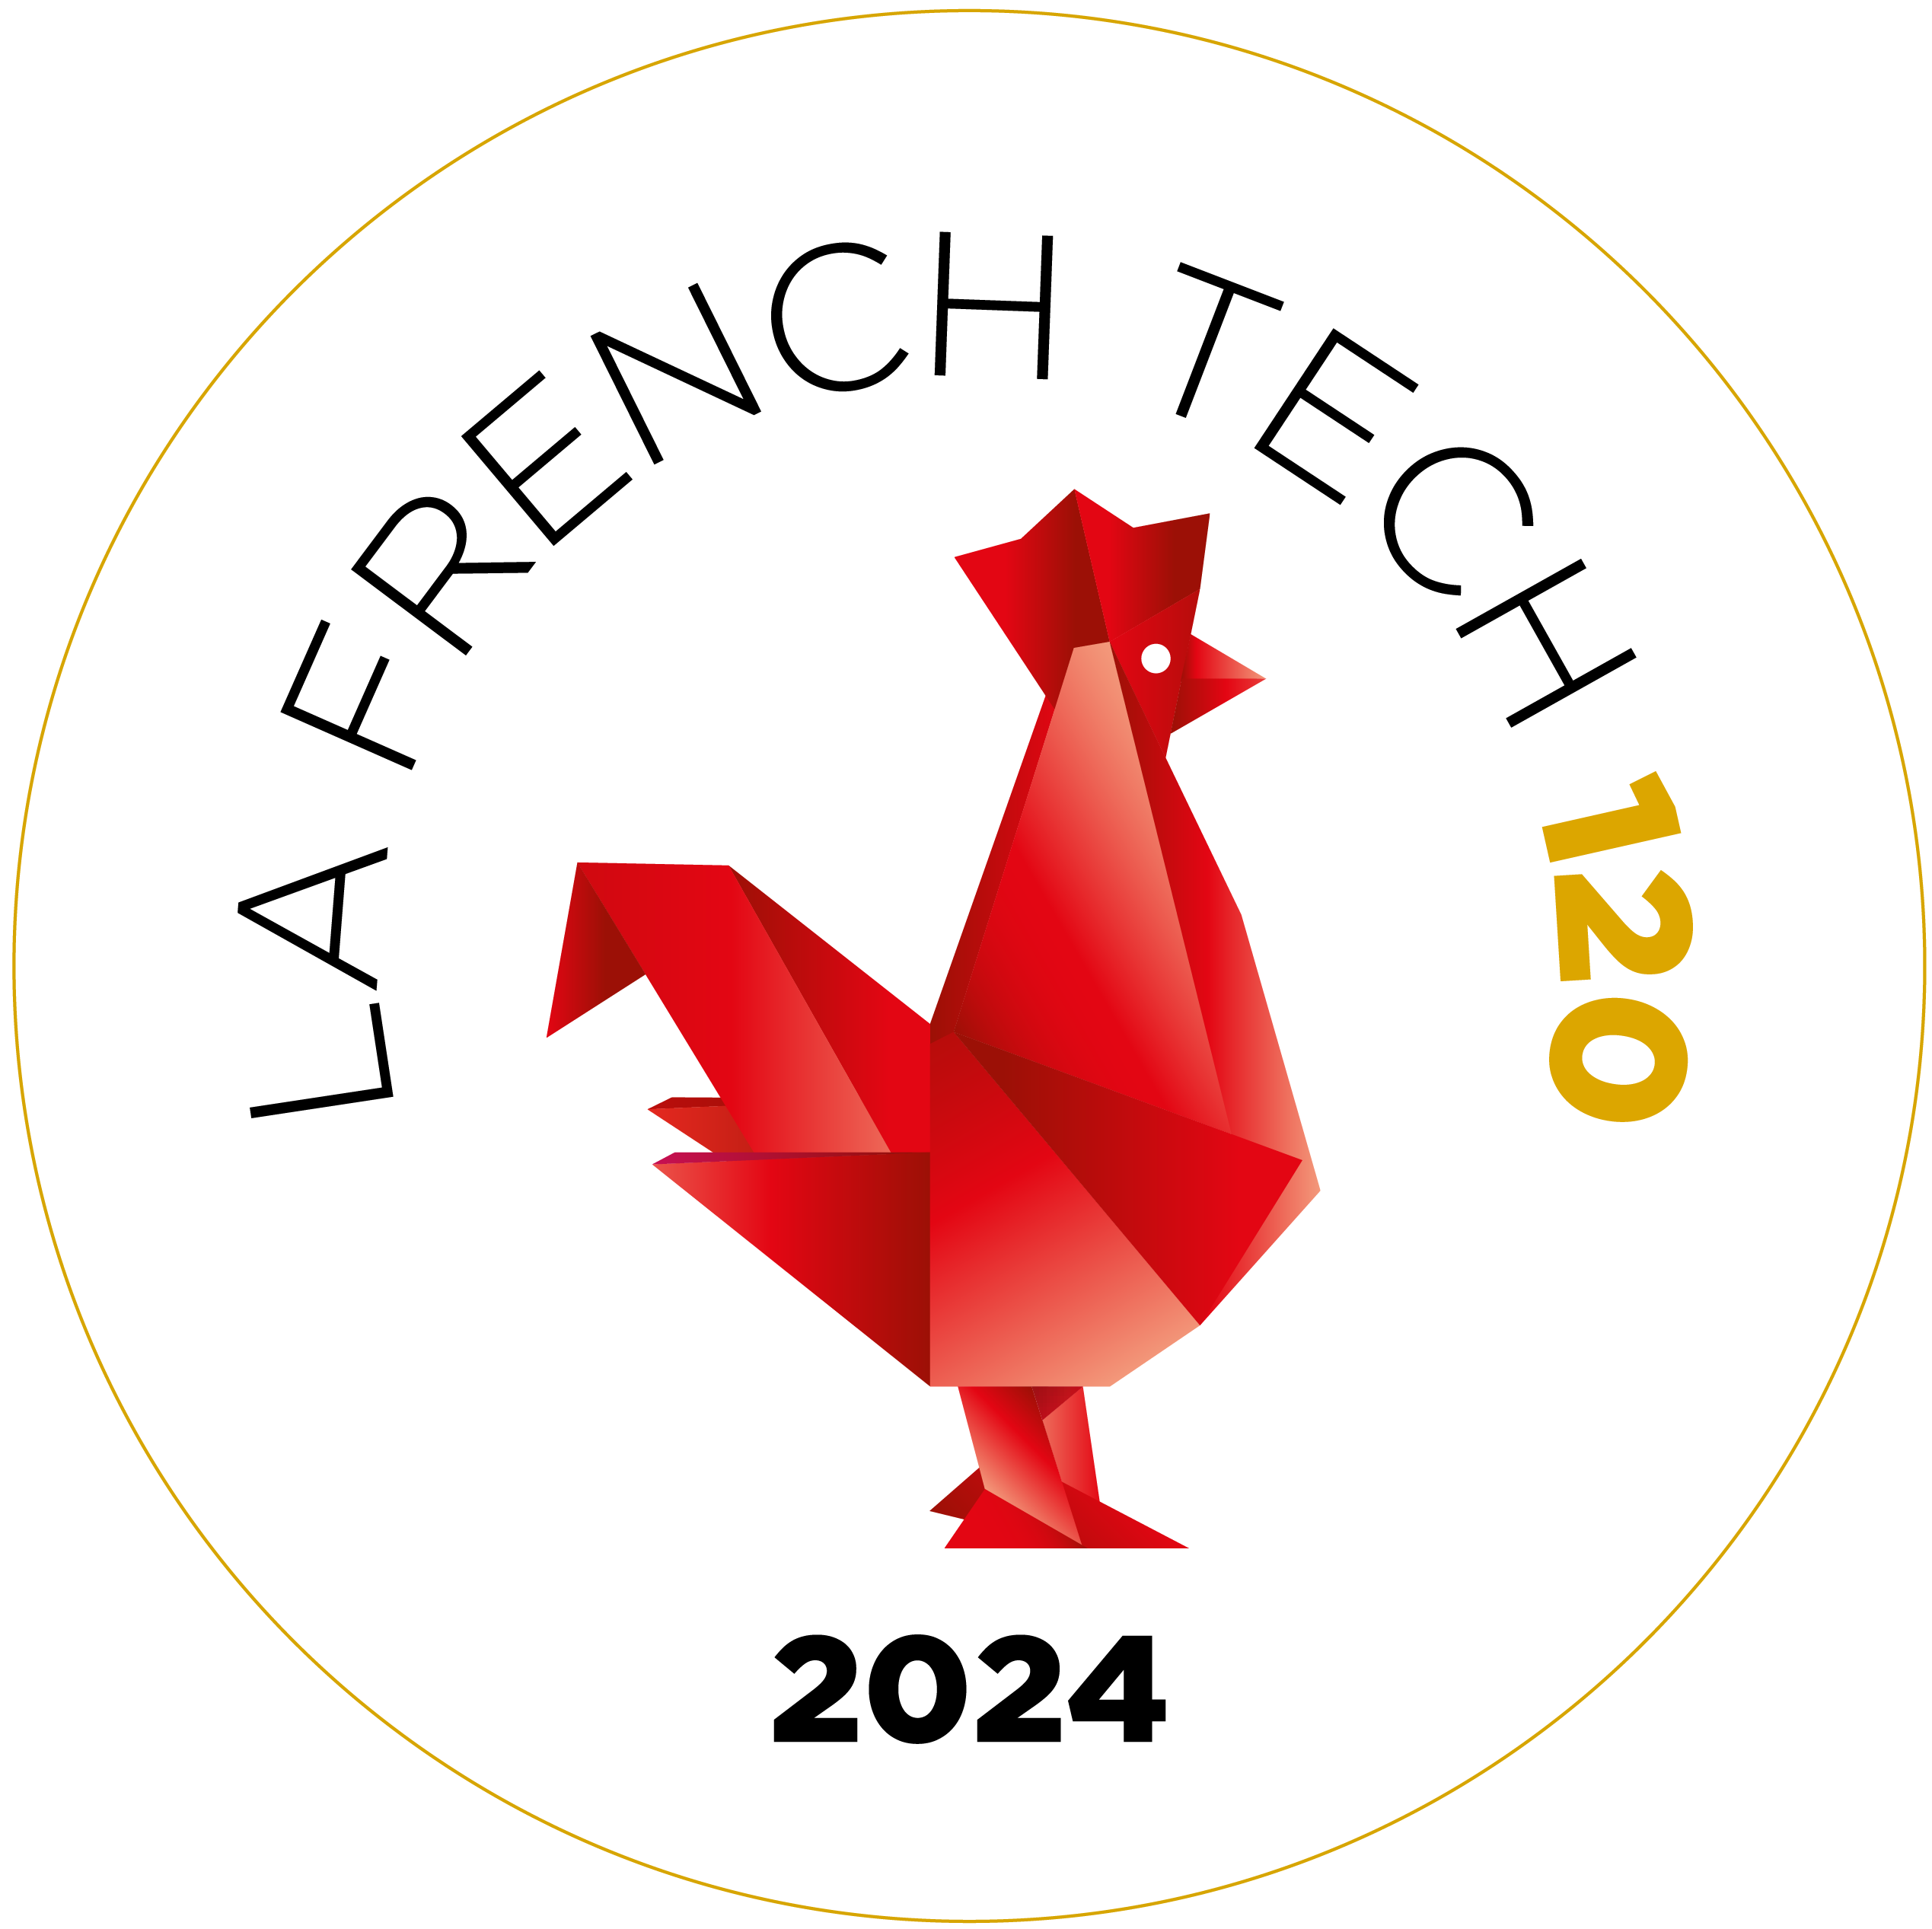 Groupe positive est membre du French Tech 120 en 2024